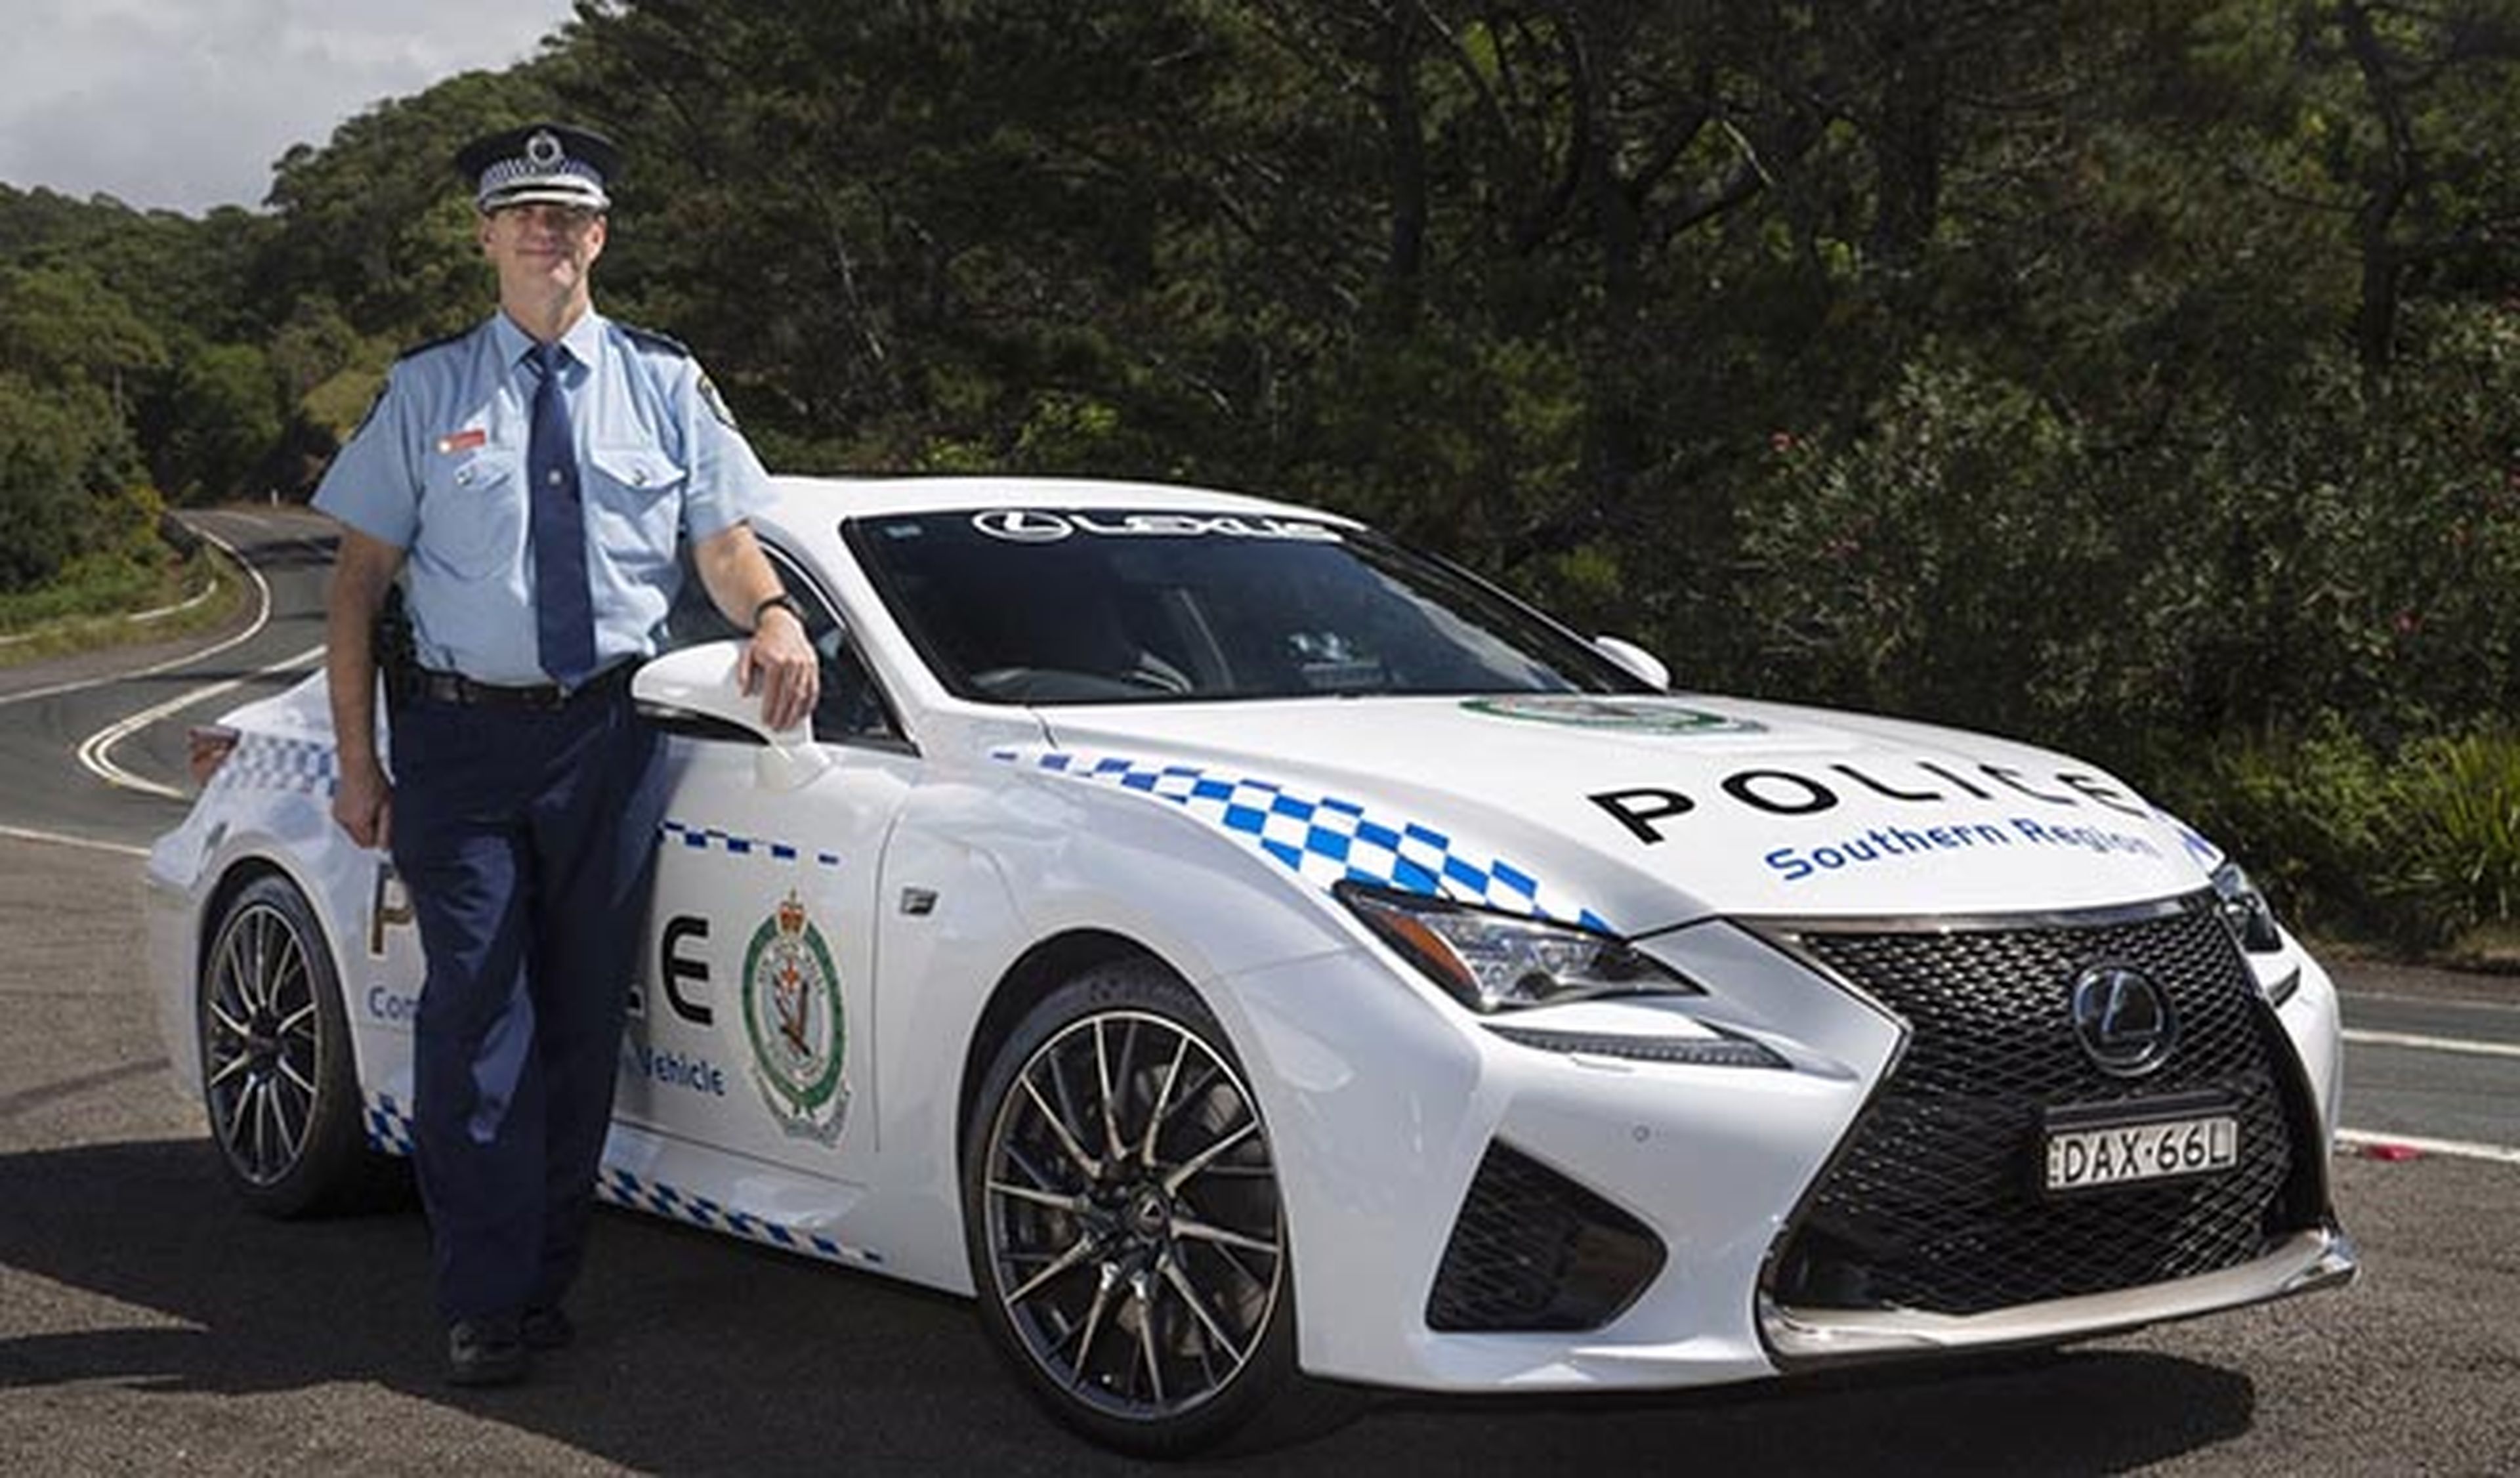 La Policía de Australia estrena coche, ¡y qué coche!